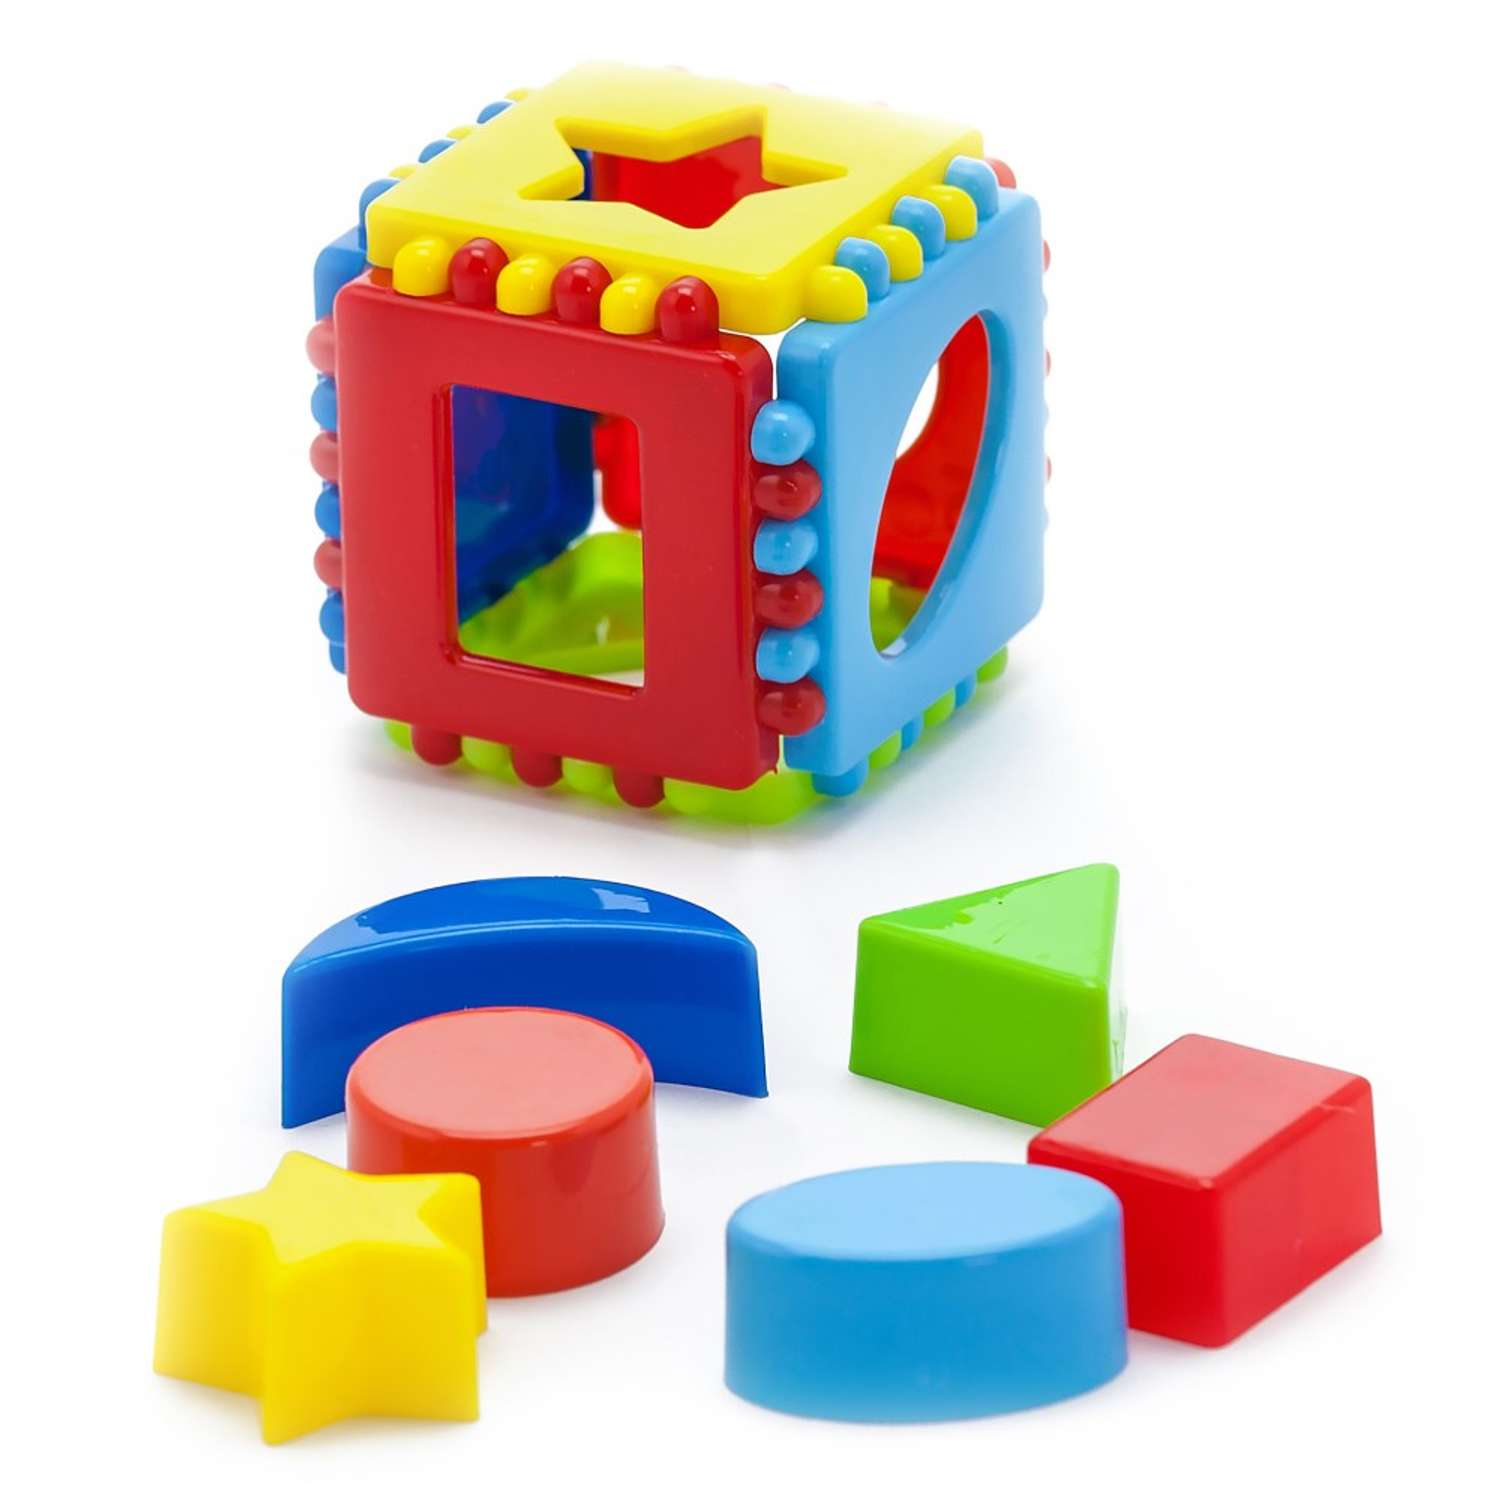 Развивающие игрушки БИПЛАНТ для малышей конструктор Кноп-Кнопыч 61 деталь + Сортер кубик малый + Команда КВА - фото 9